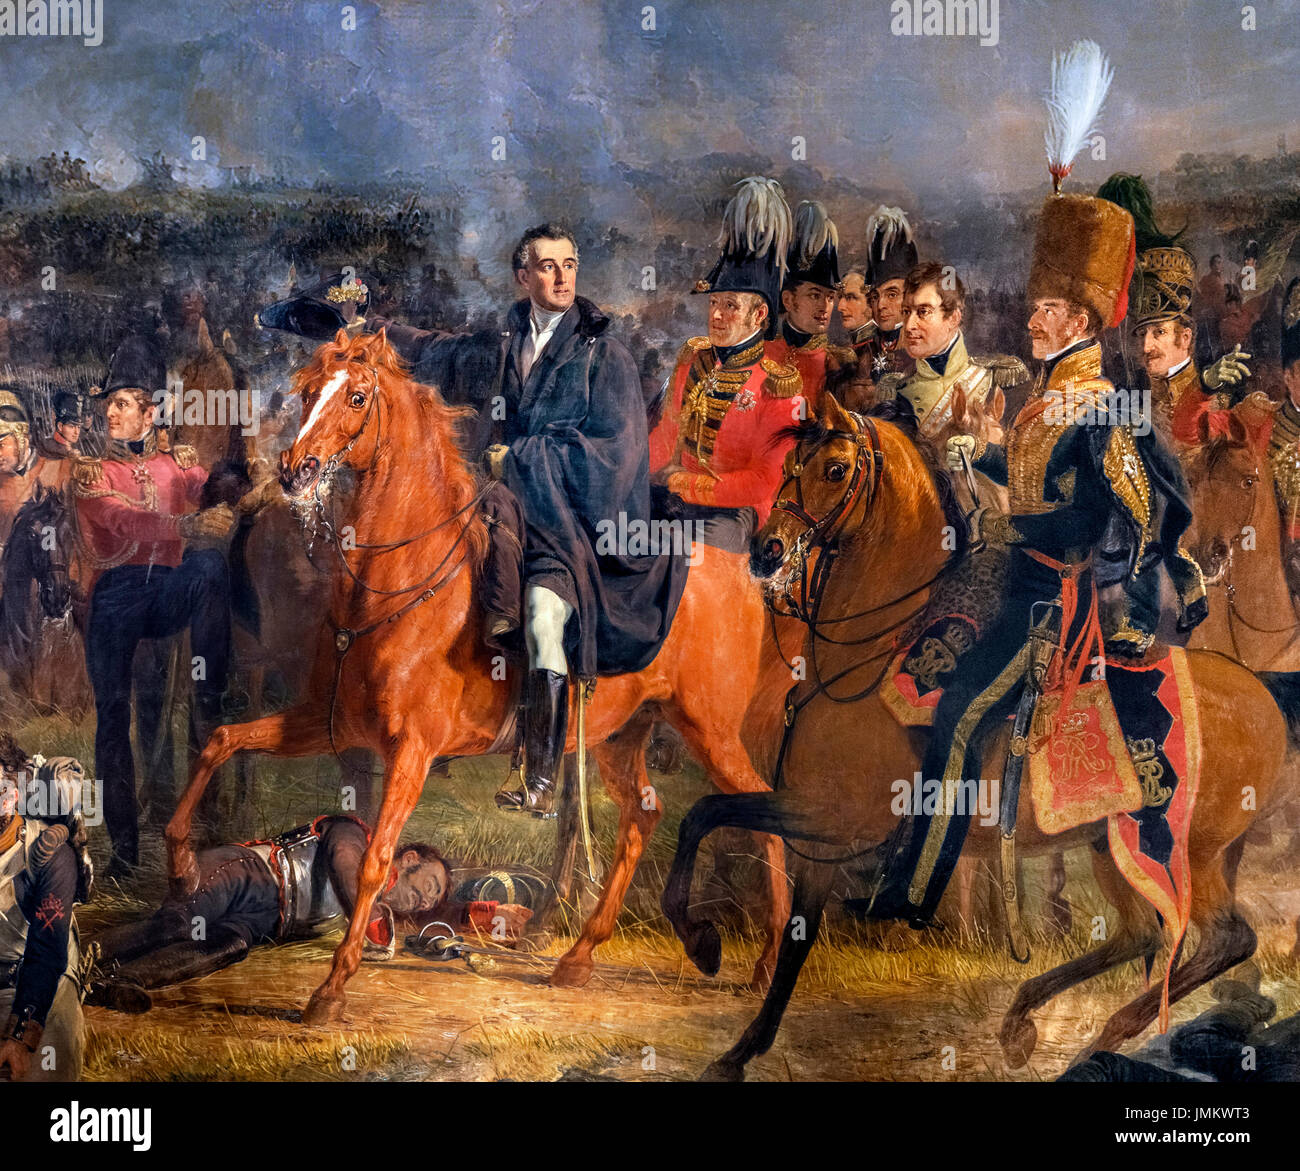 La bataille de Waterloo par Jan Willem Pieneman (1779-1853), huile sur toile, 1824. Le tableau montre le duc de Wellington, à cheval à gauche de la photo, à un moment décisif dans la bataille de Waterloo le 18 juin 1815. Détail d'une peinture, plus JMKWT8. Banque D'Images